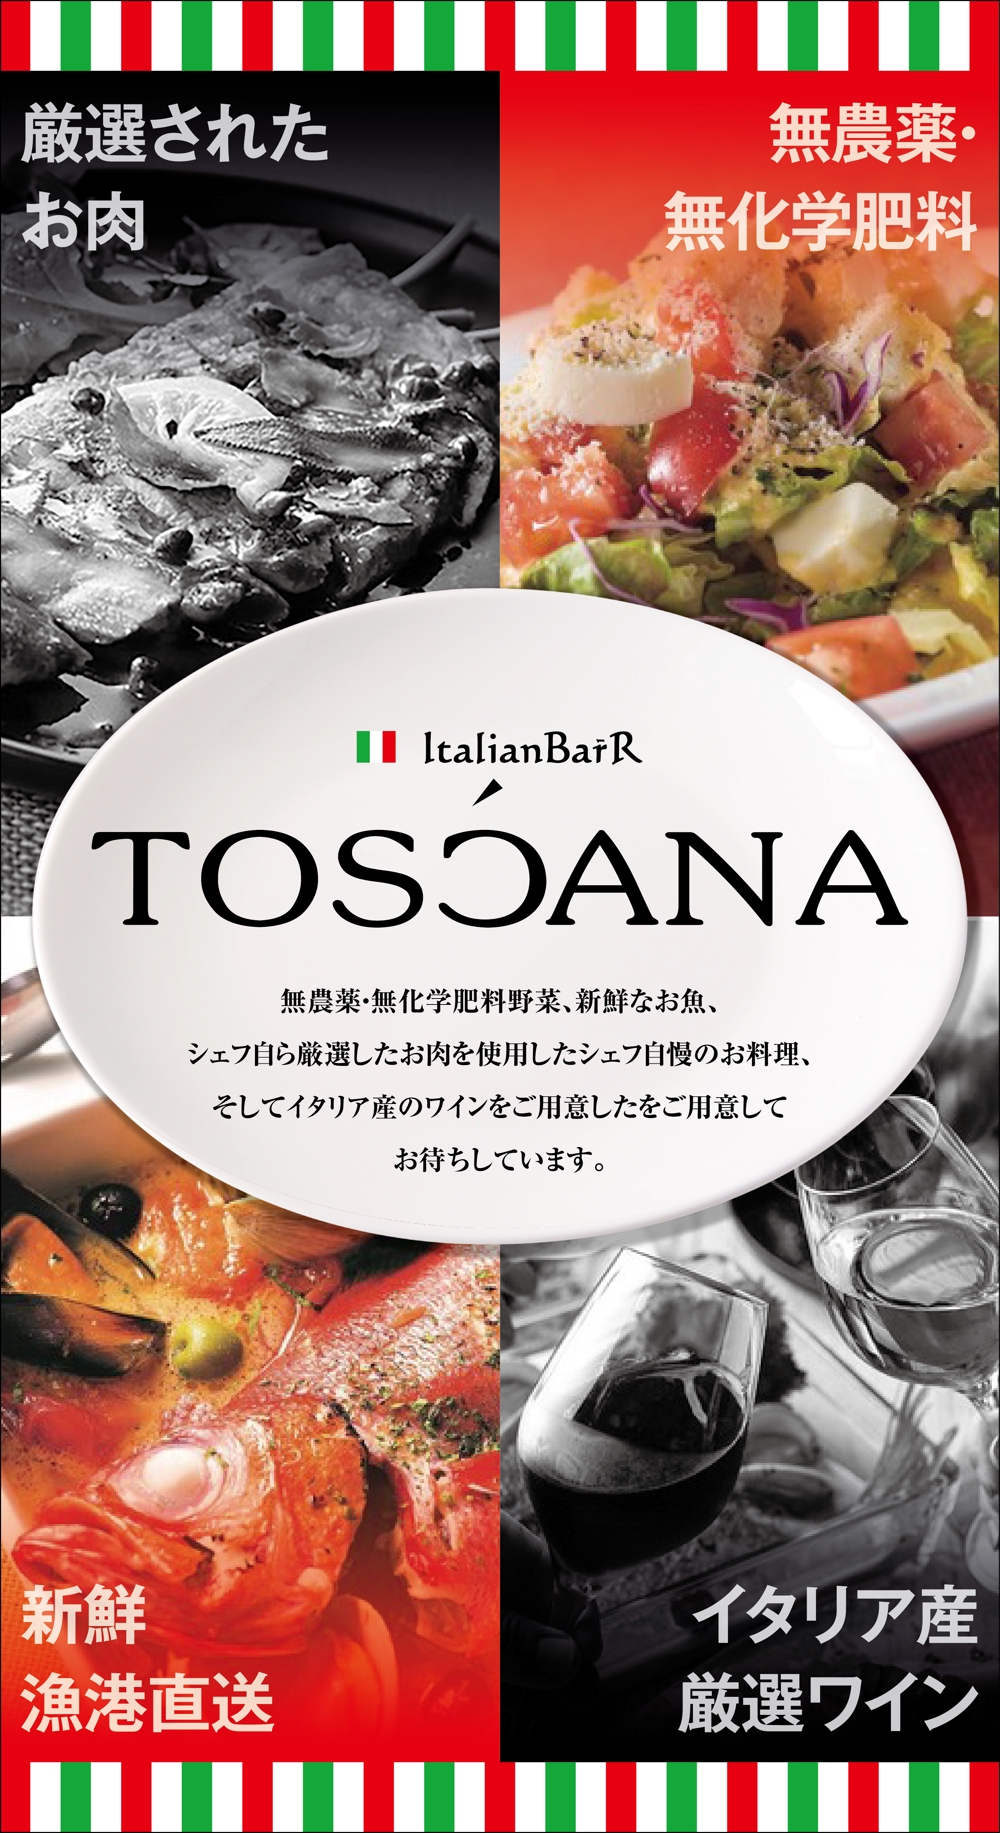 創業28年お魚ワインバル・イタリアン「TOSCANA」の看板製作